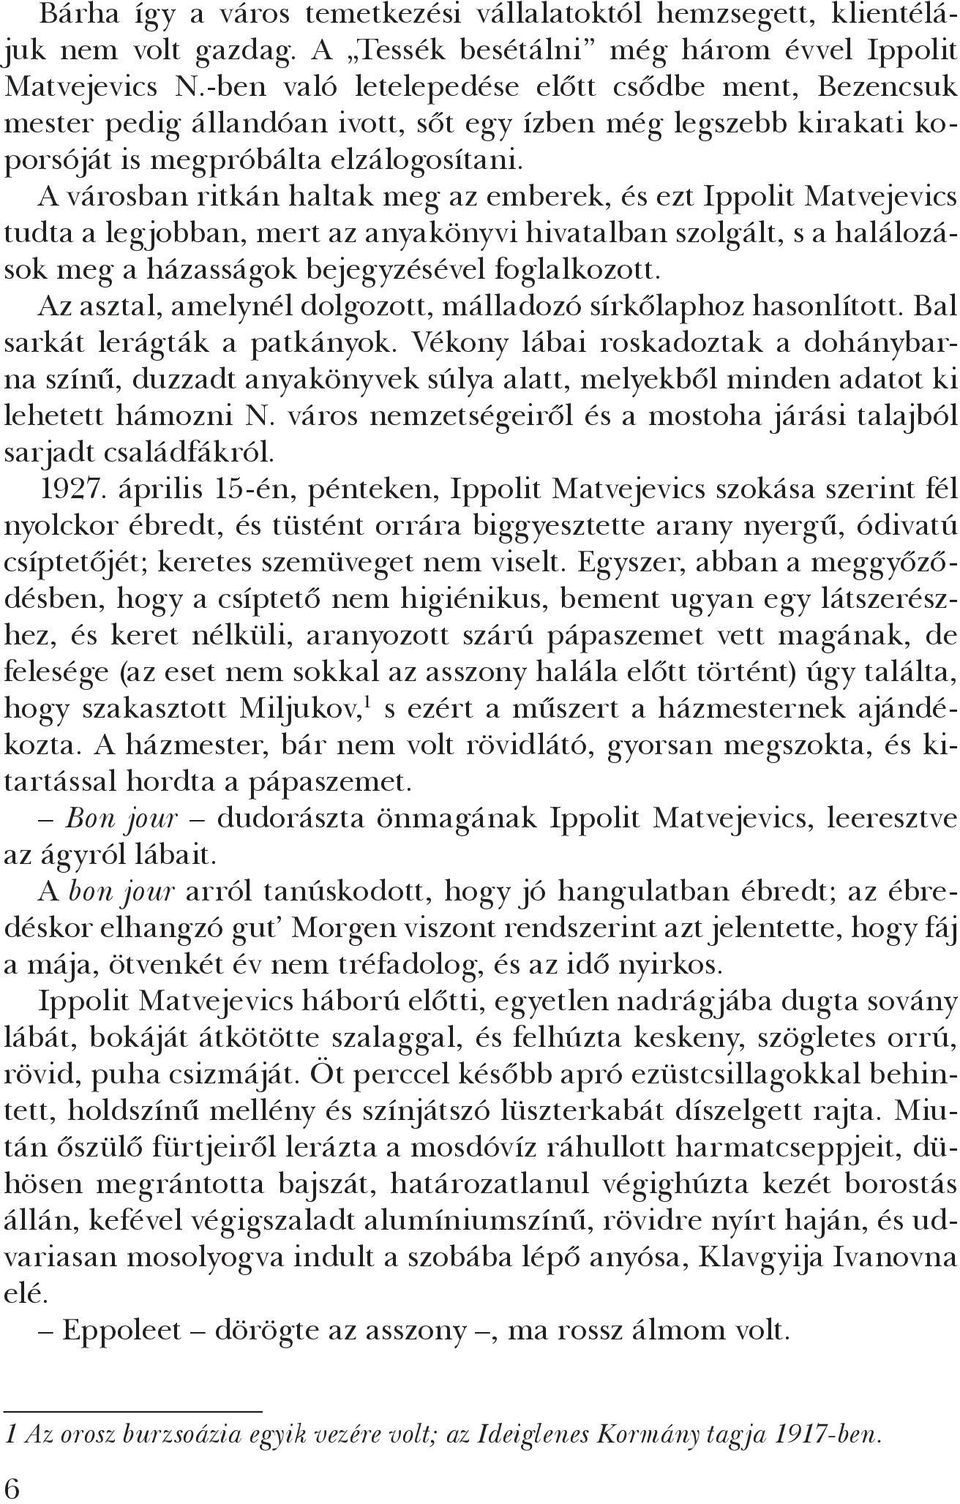 A városban ritkán haltak meg az emberek, és ezt Ippolit Matvejevics tudta a legjobban, mert az anyakönyvi hivatalban szolgált, s a halálozások meg a házasságok bejegyzésével foglal kozott.